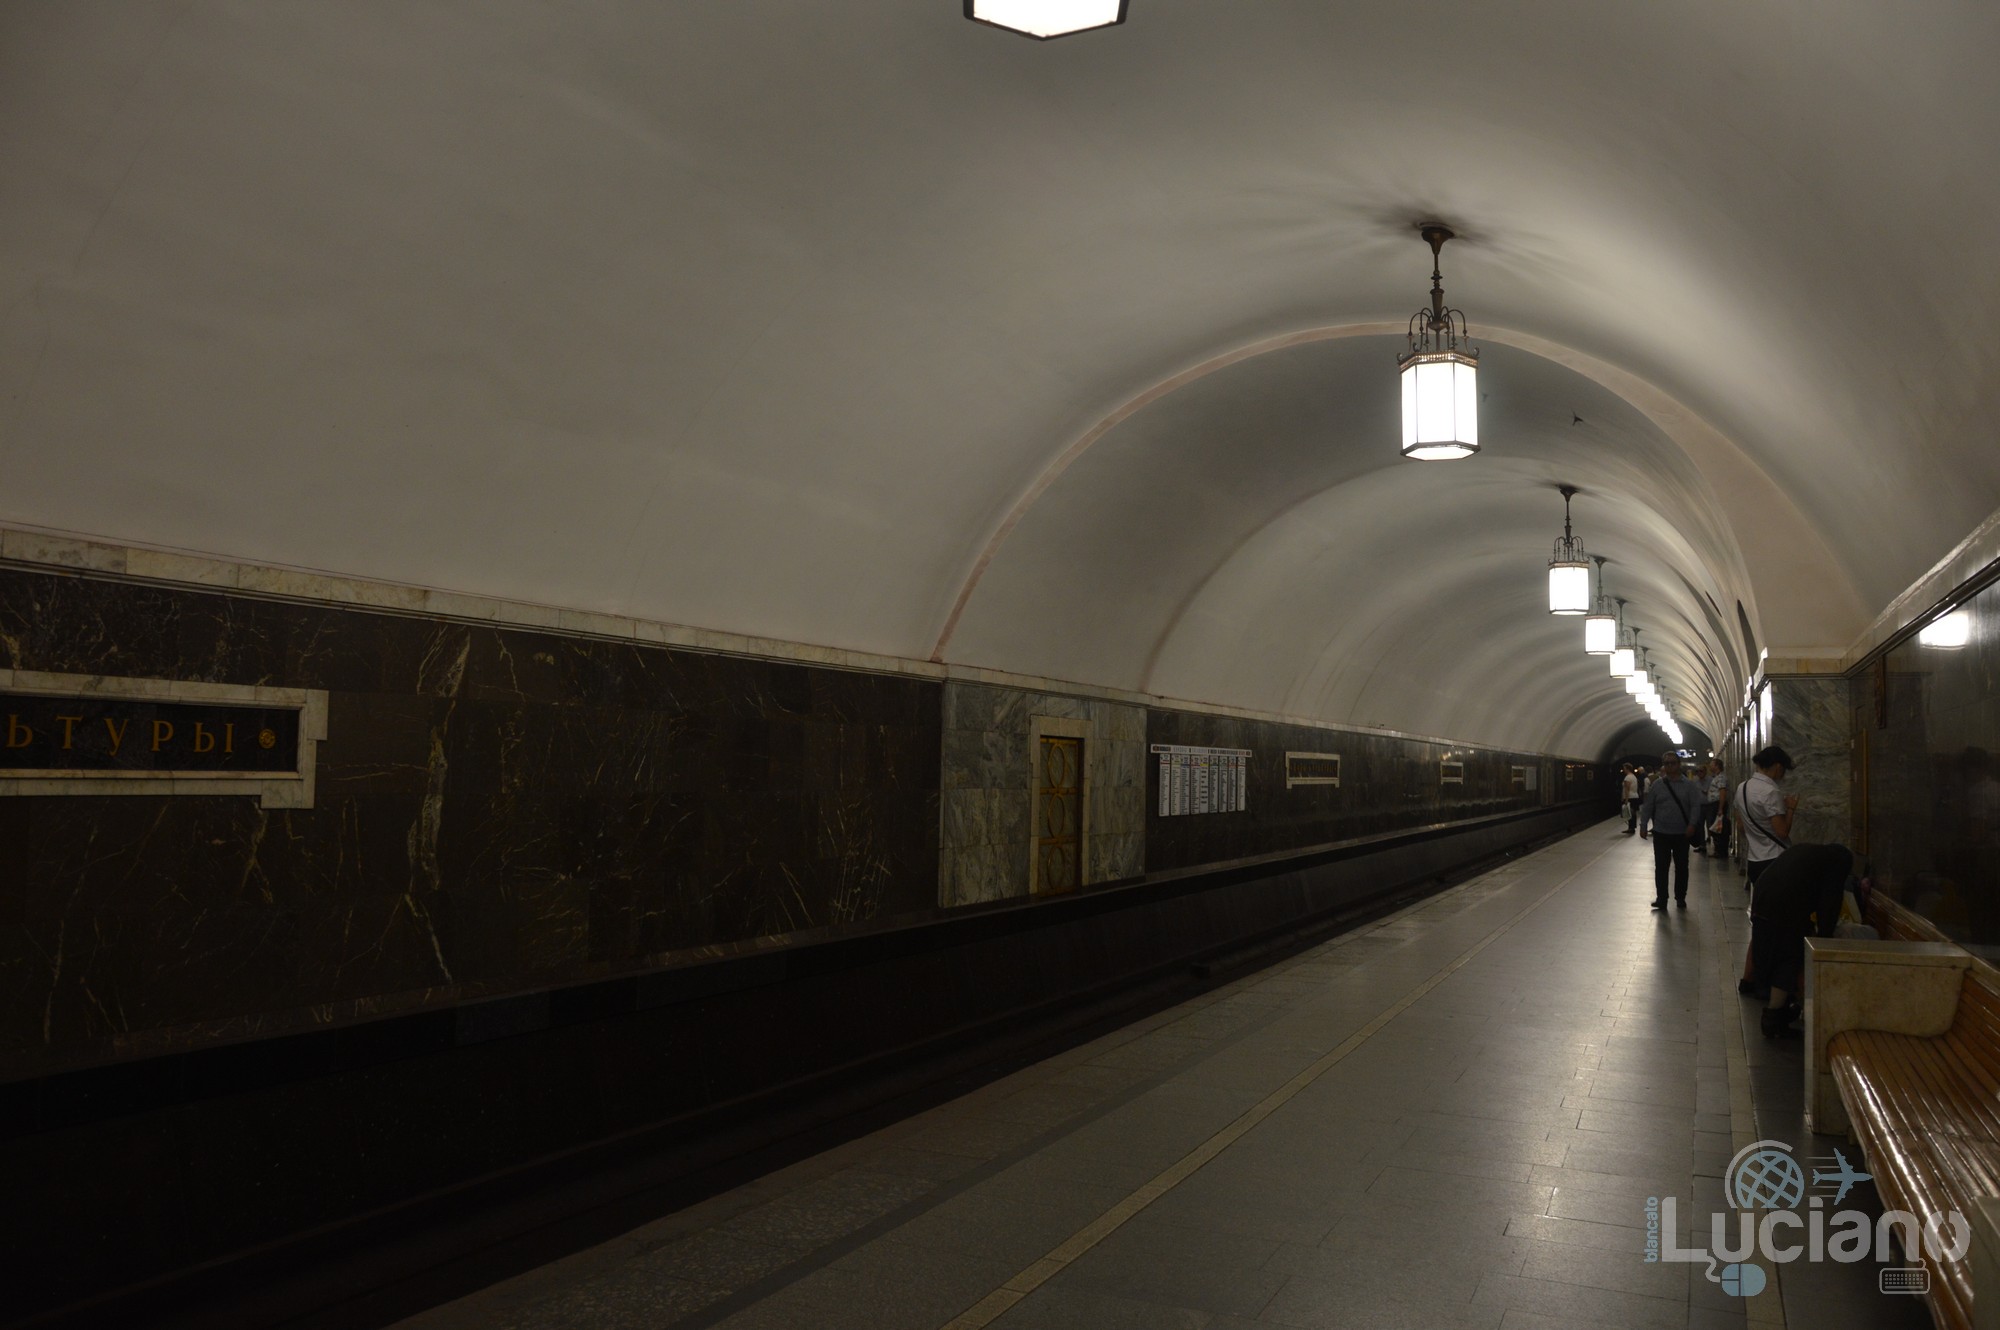 Park Kul'tury (in russo: Парк культу́ры) è una stazione della Linea Kol'cevaja, la linea circolare della Metropolitana di Mosca - ovvero la linea n 5 di colore marrone.